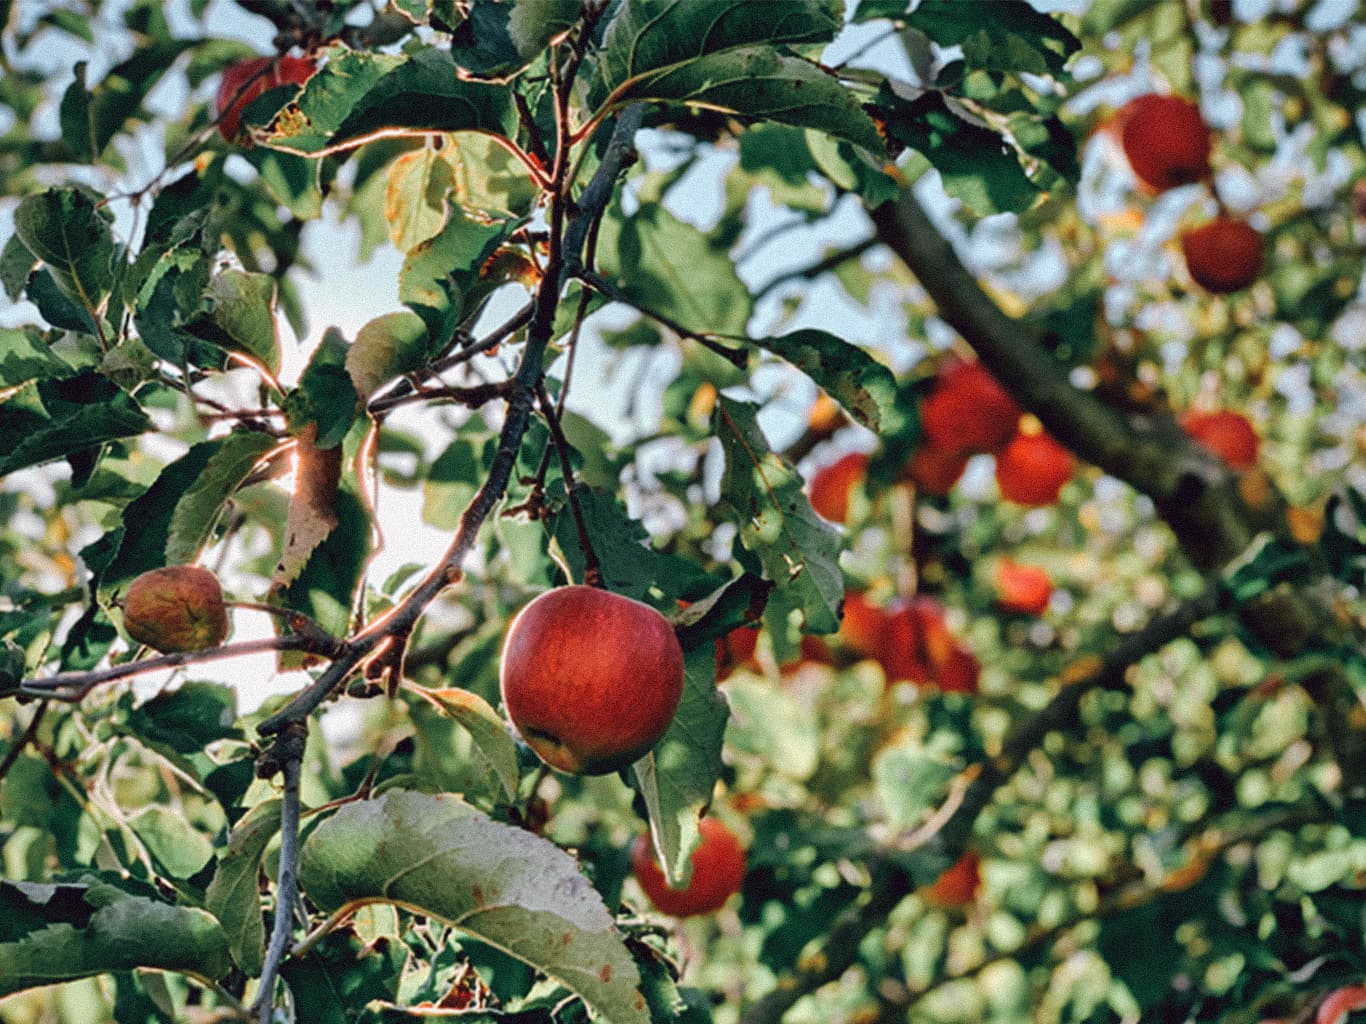 Eine Nahaufnahme von einem Apfelbaum, auf der viele rote Äpfel zu sehen sind